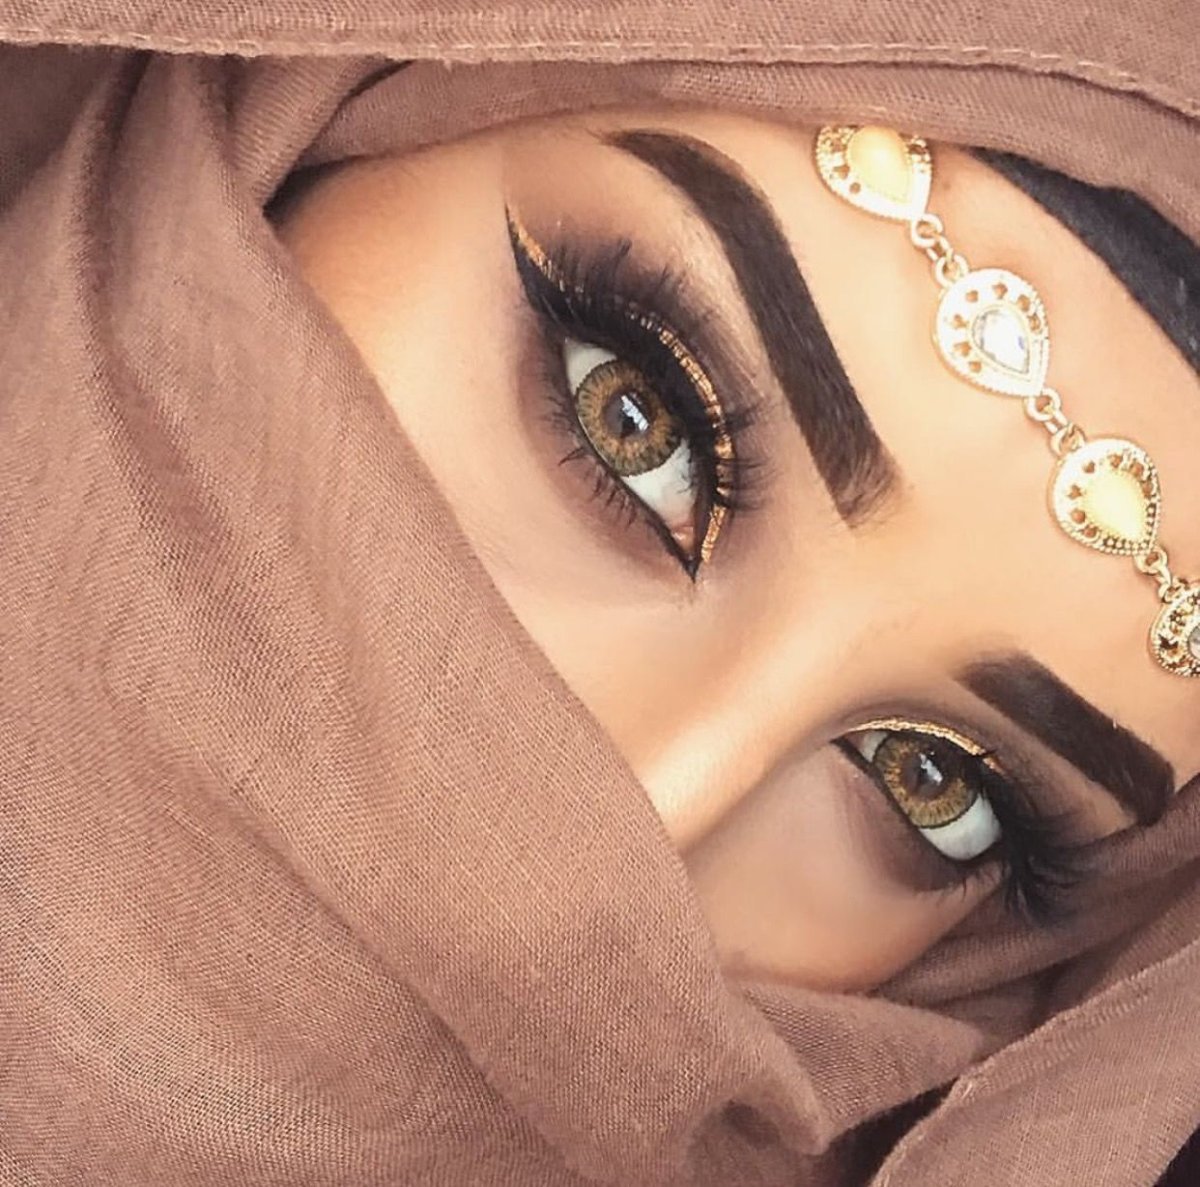 Красивые женские глаза